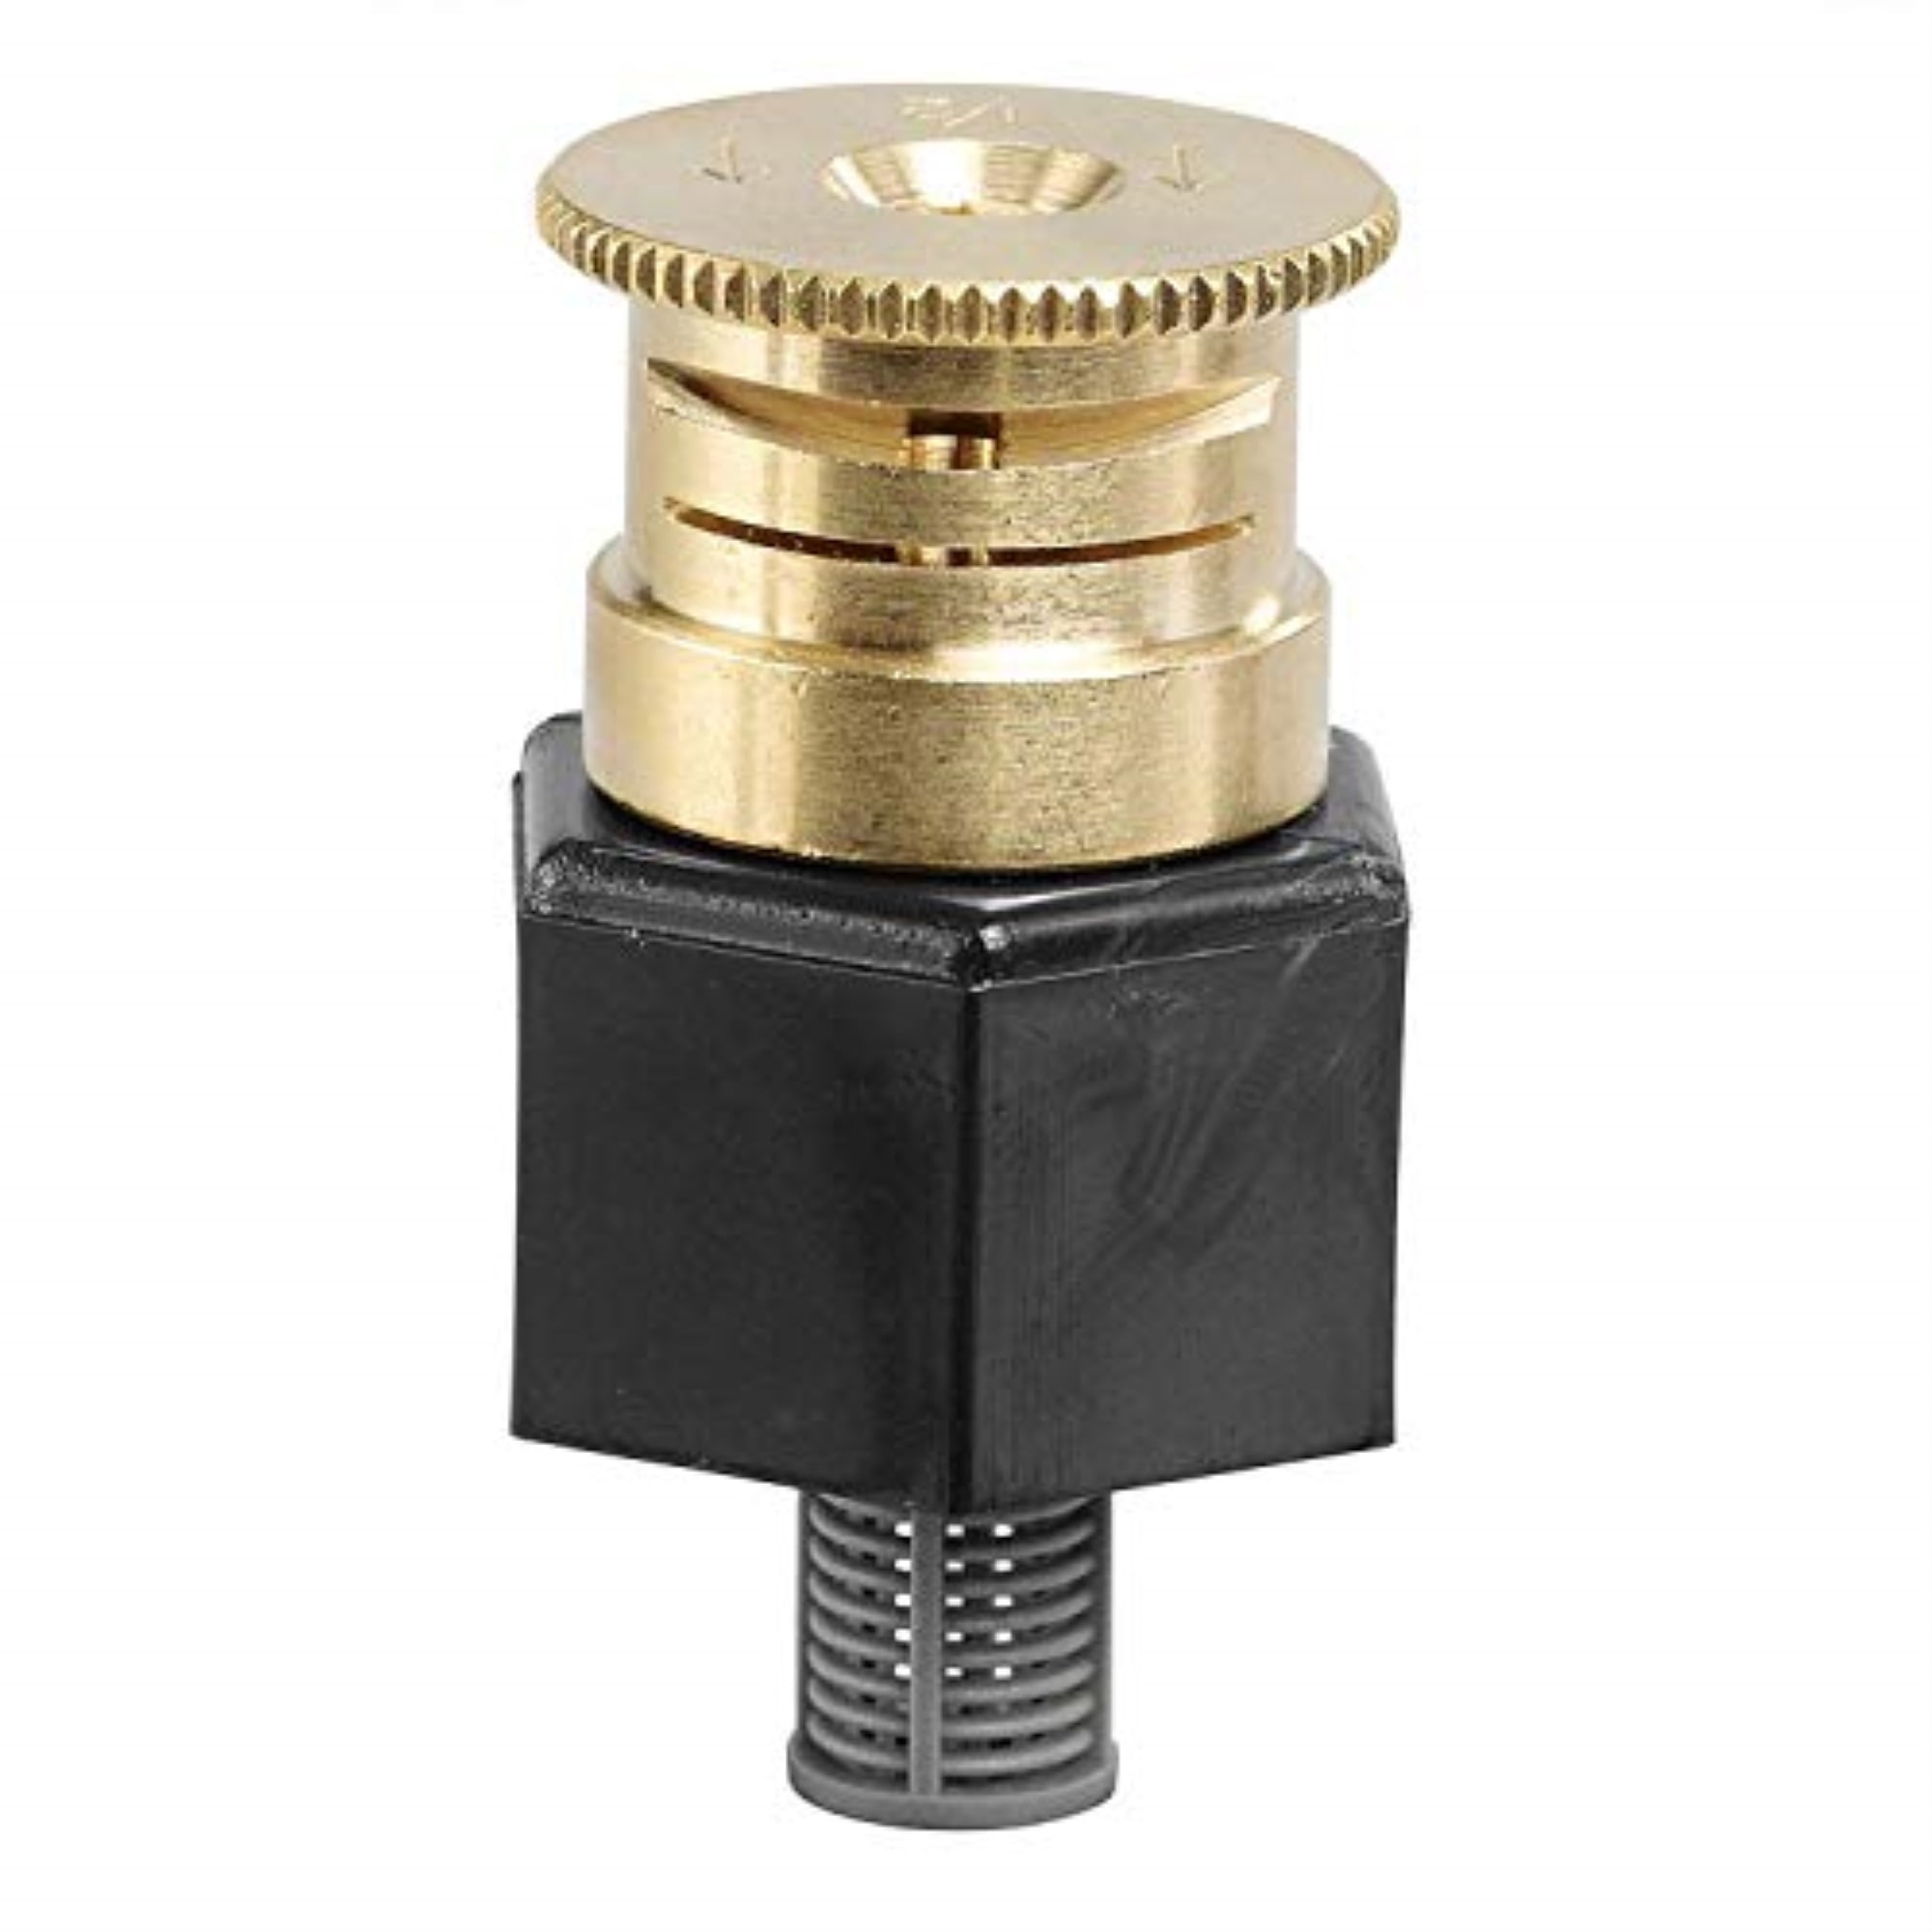 Orbit Adjustable Pattern Brass Irrigation Shrub Head Sprinkler, 15-Foot -  54054 